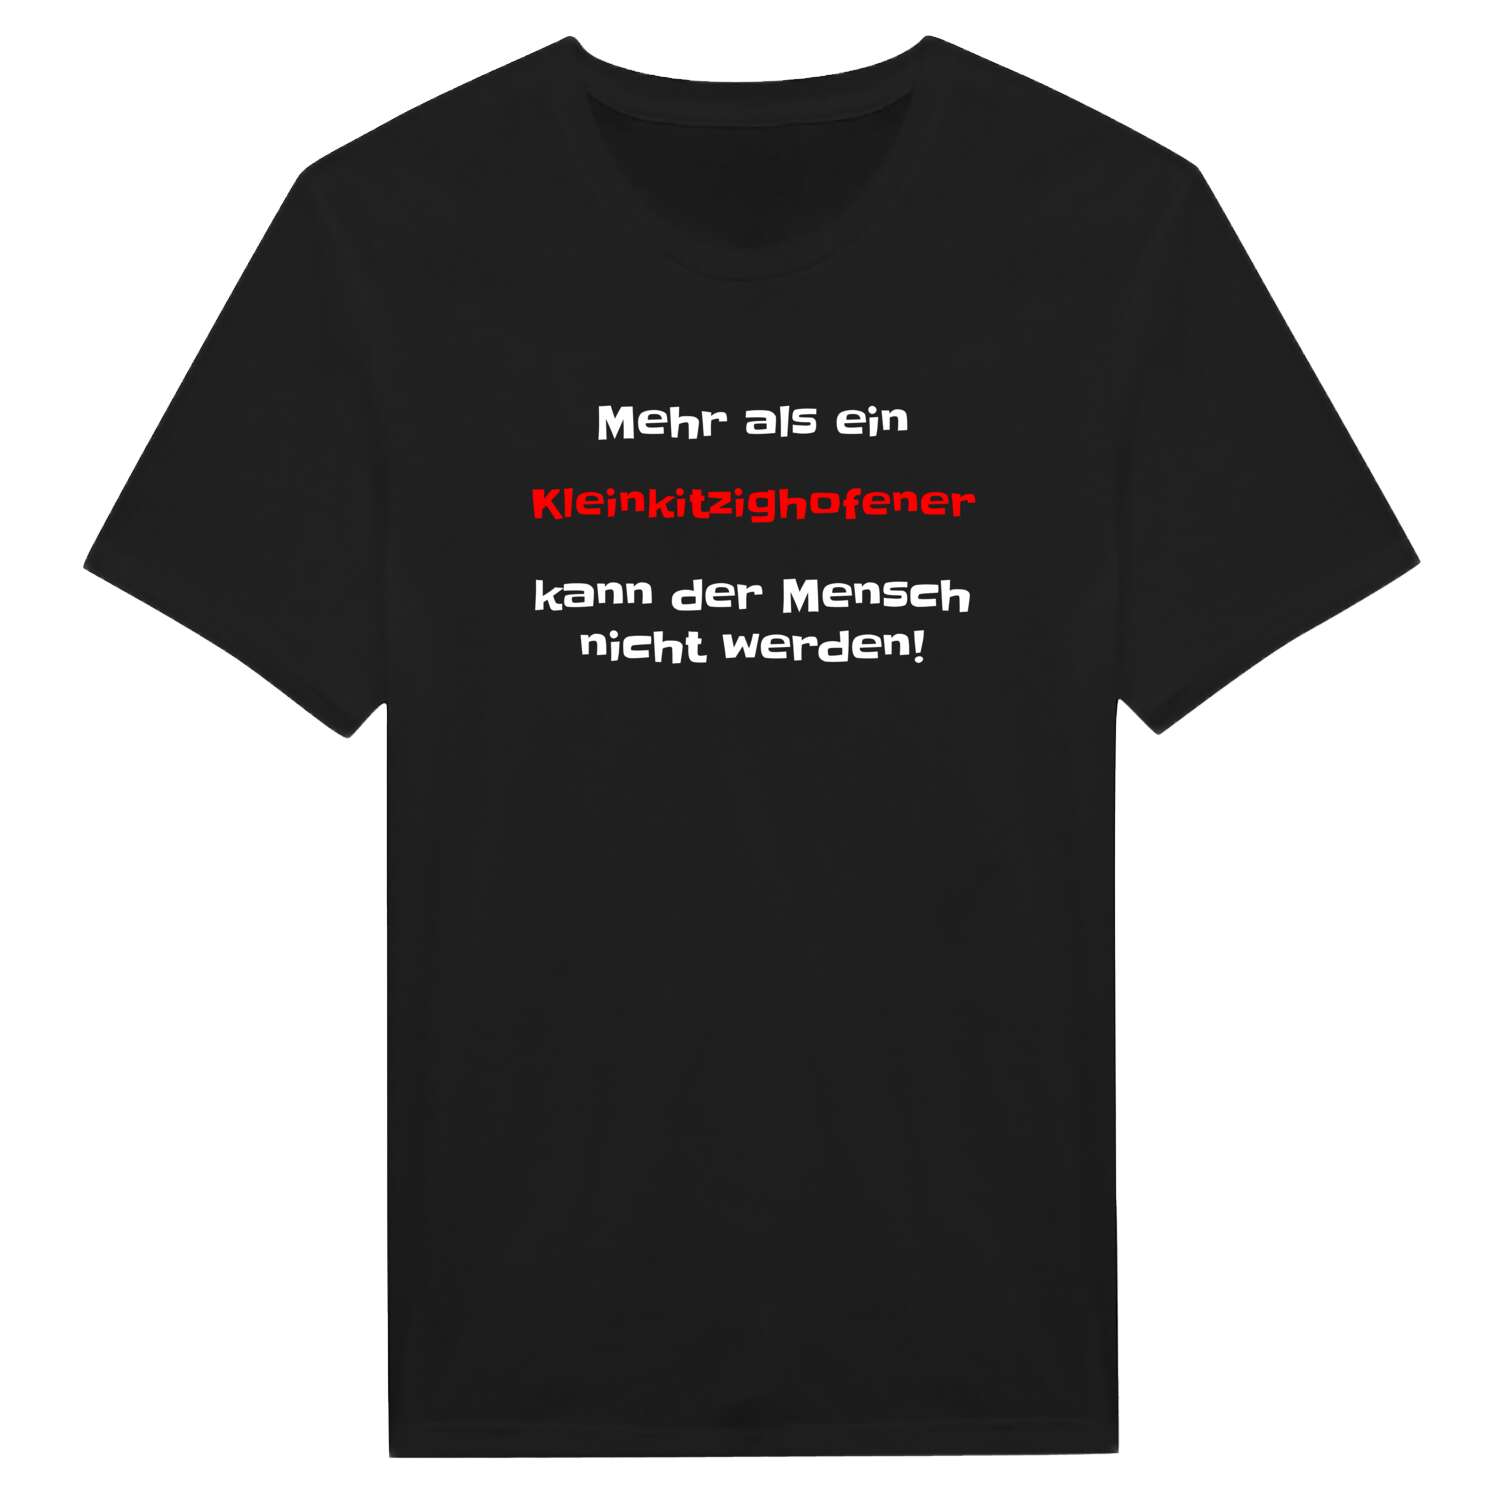 Kleinkitzighofen T-Shirt »Mehr als ein«